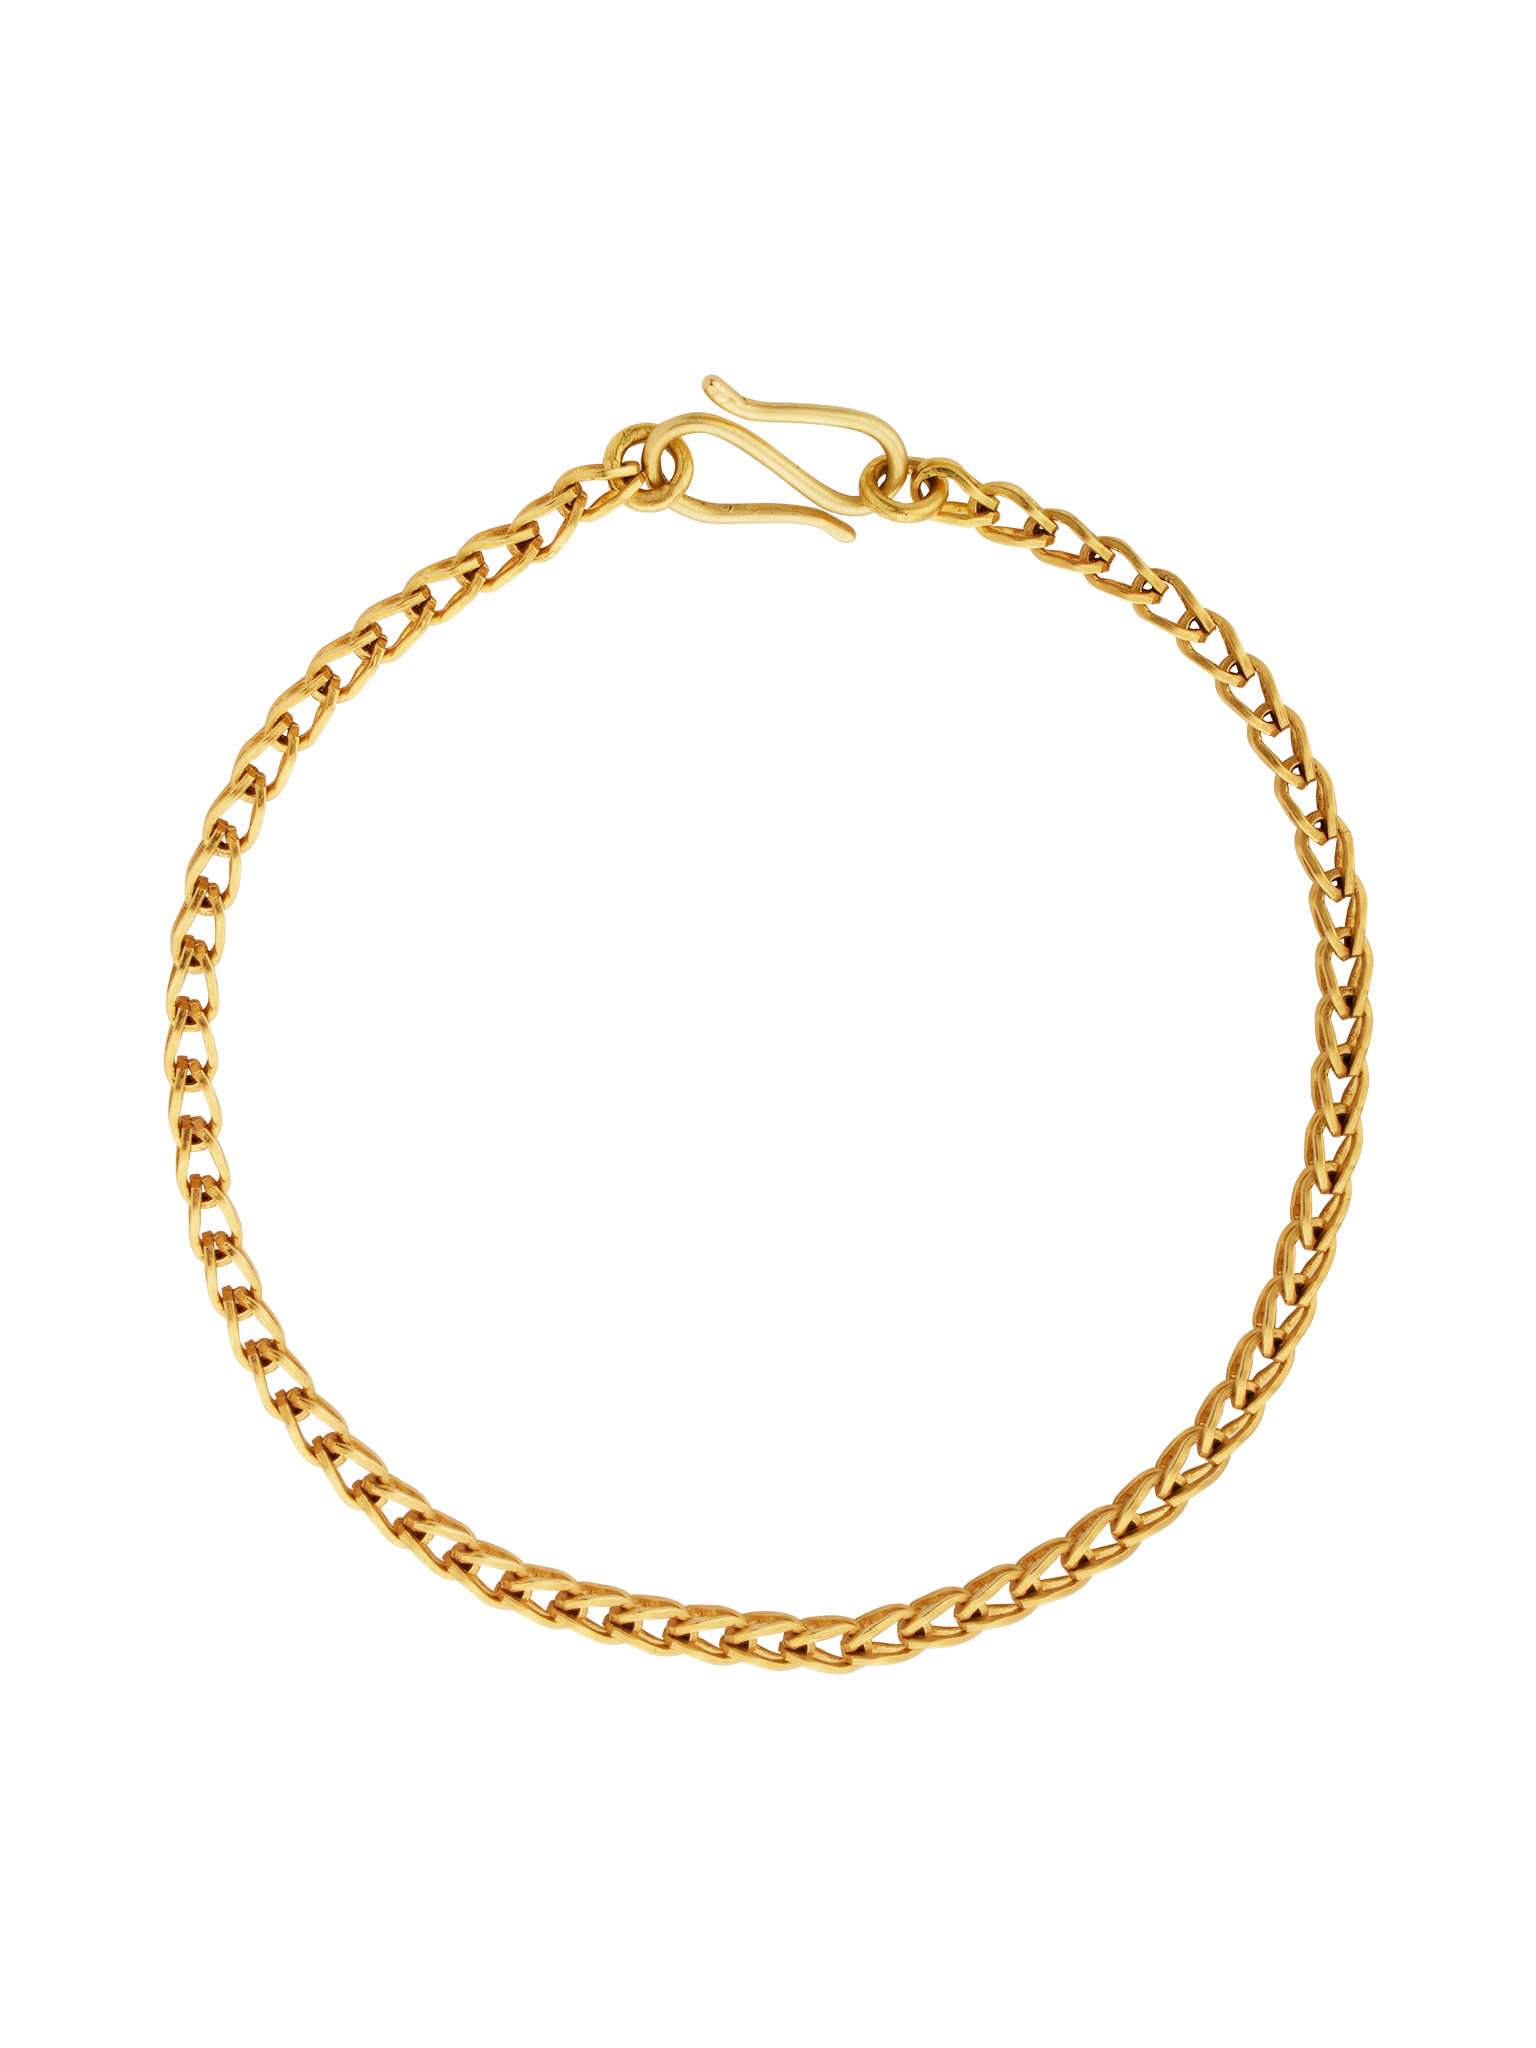 Solo Loop-in-loop bracelet (Refurbished)